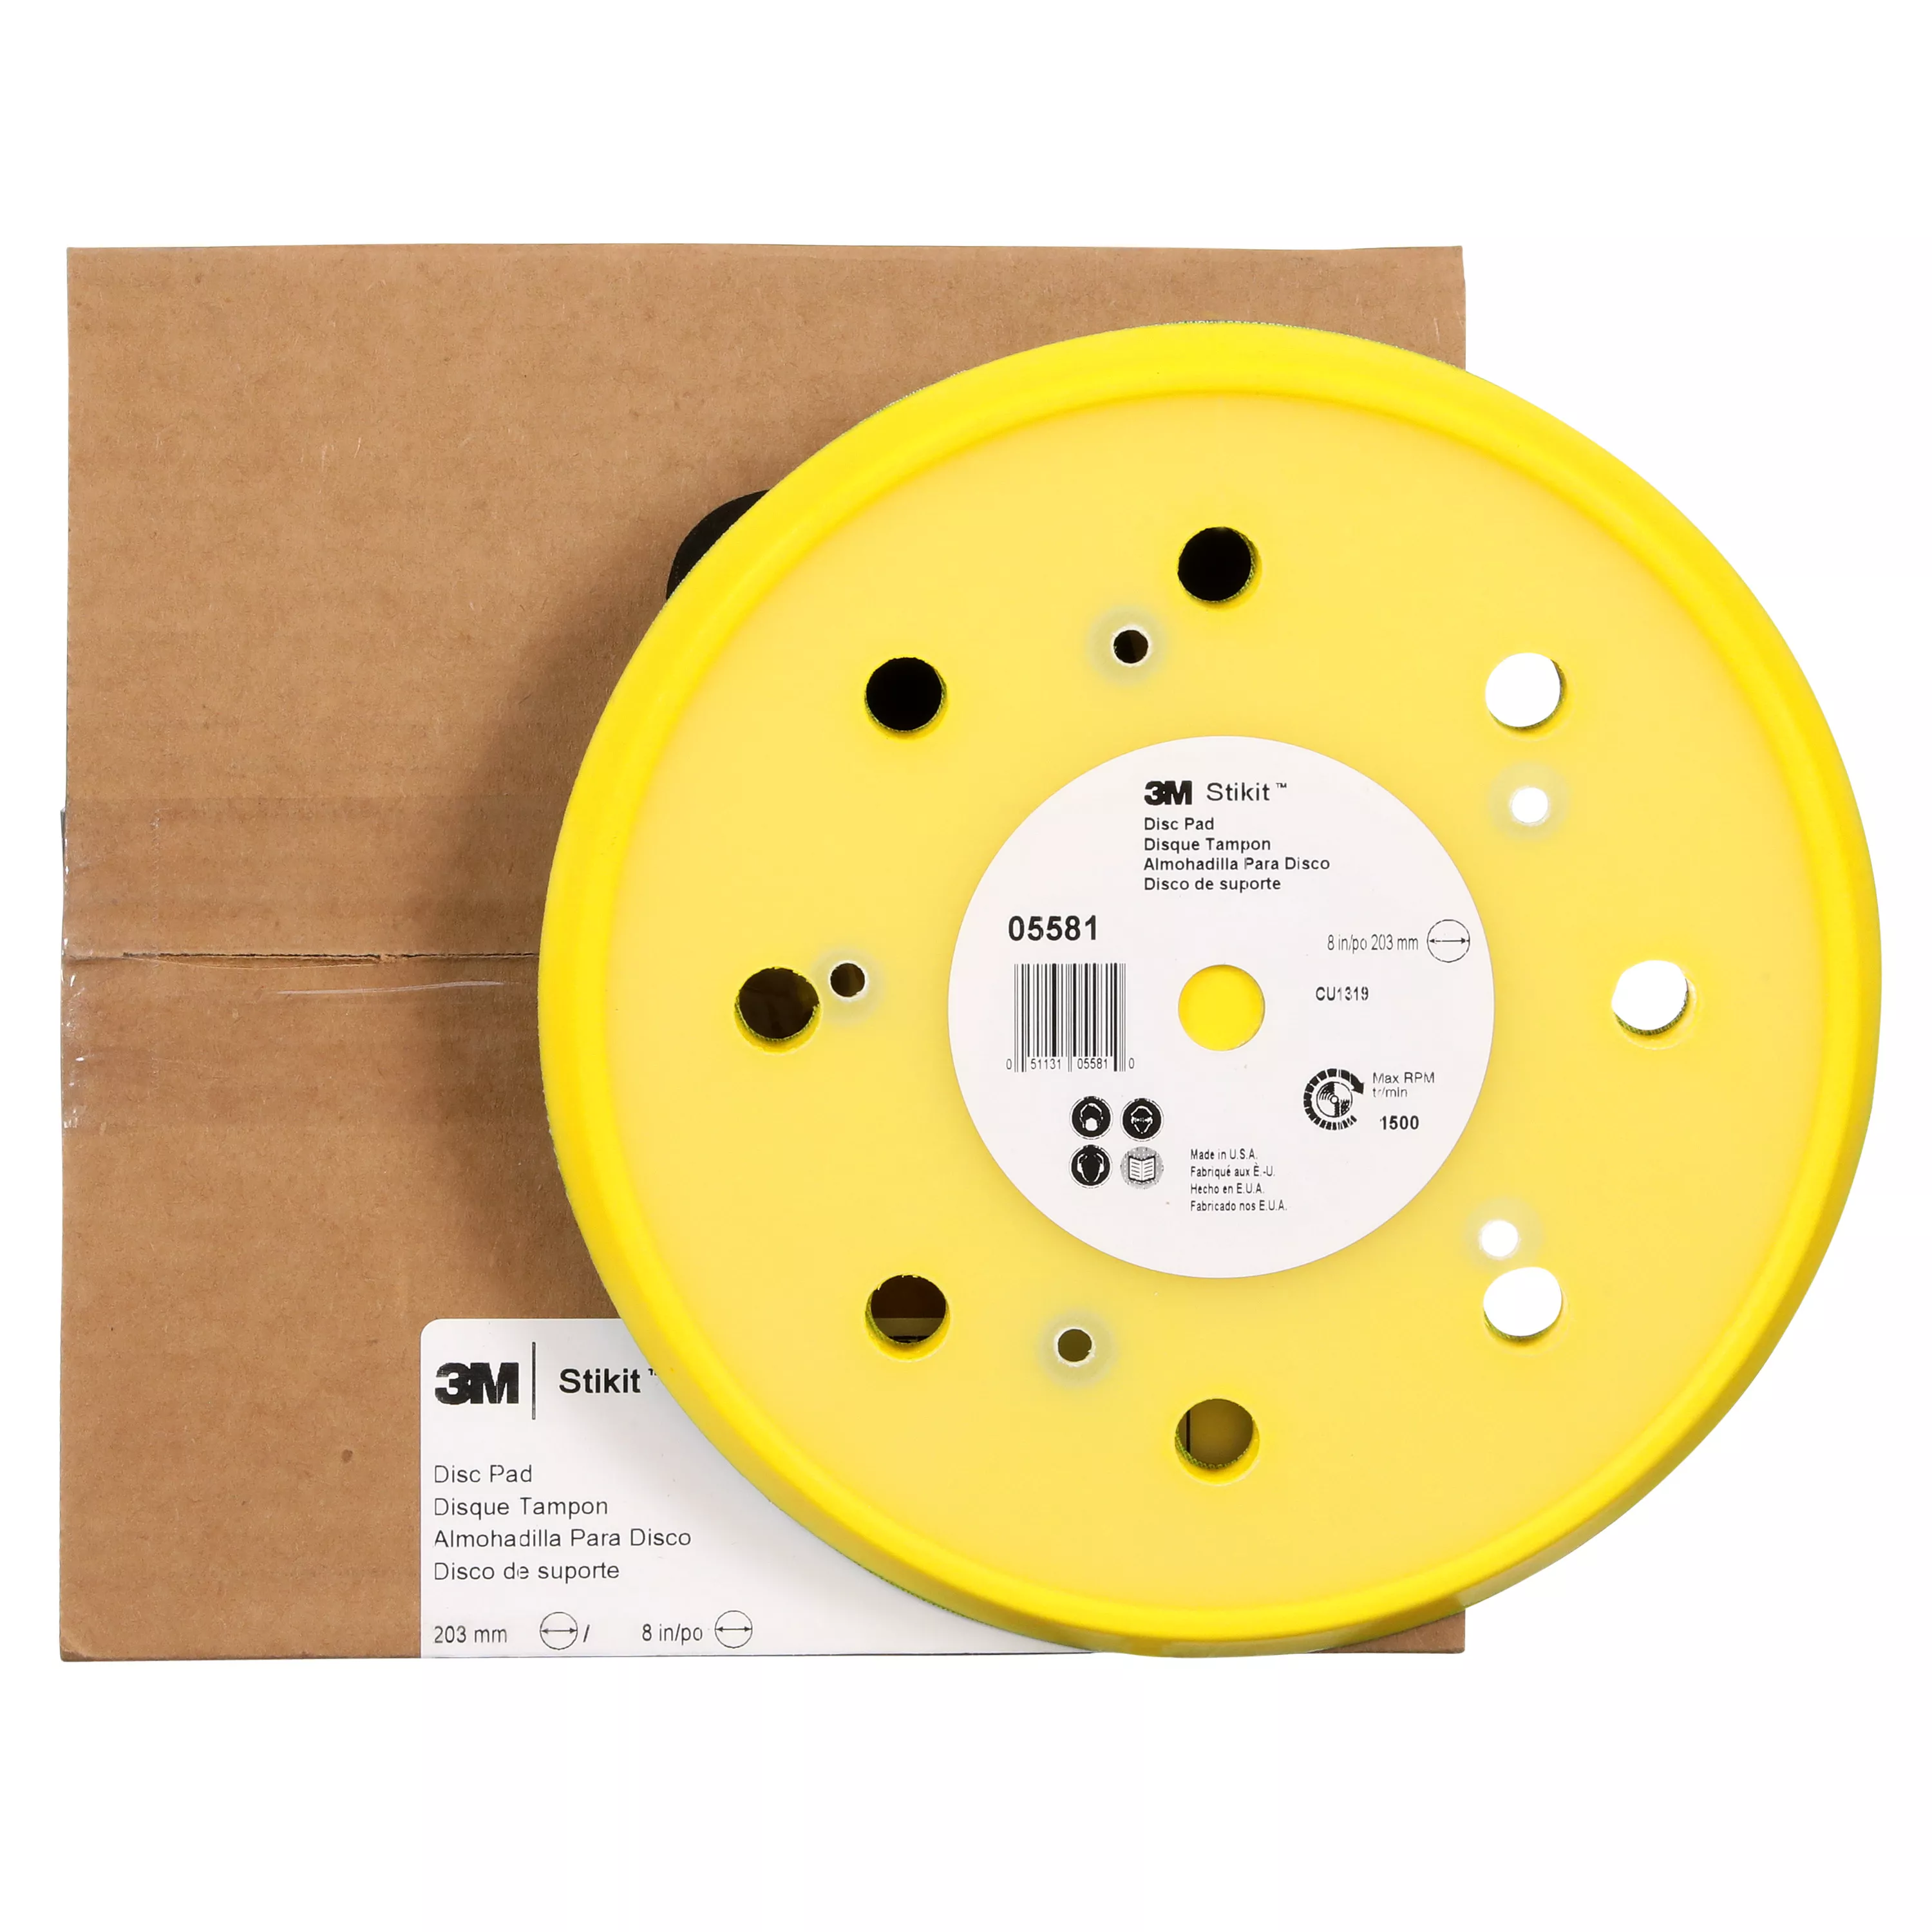 SKU 7100089474 | 3M™ Stikit™ Disc Pad Dust Free